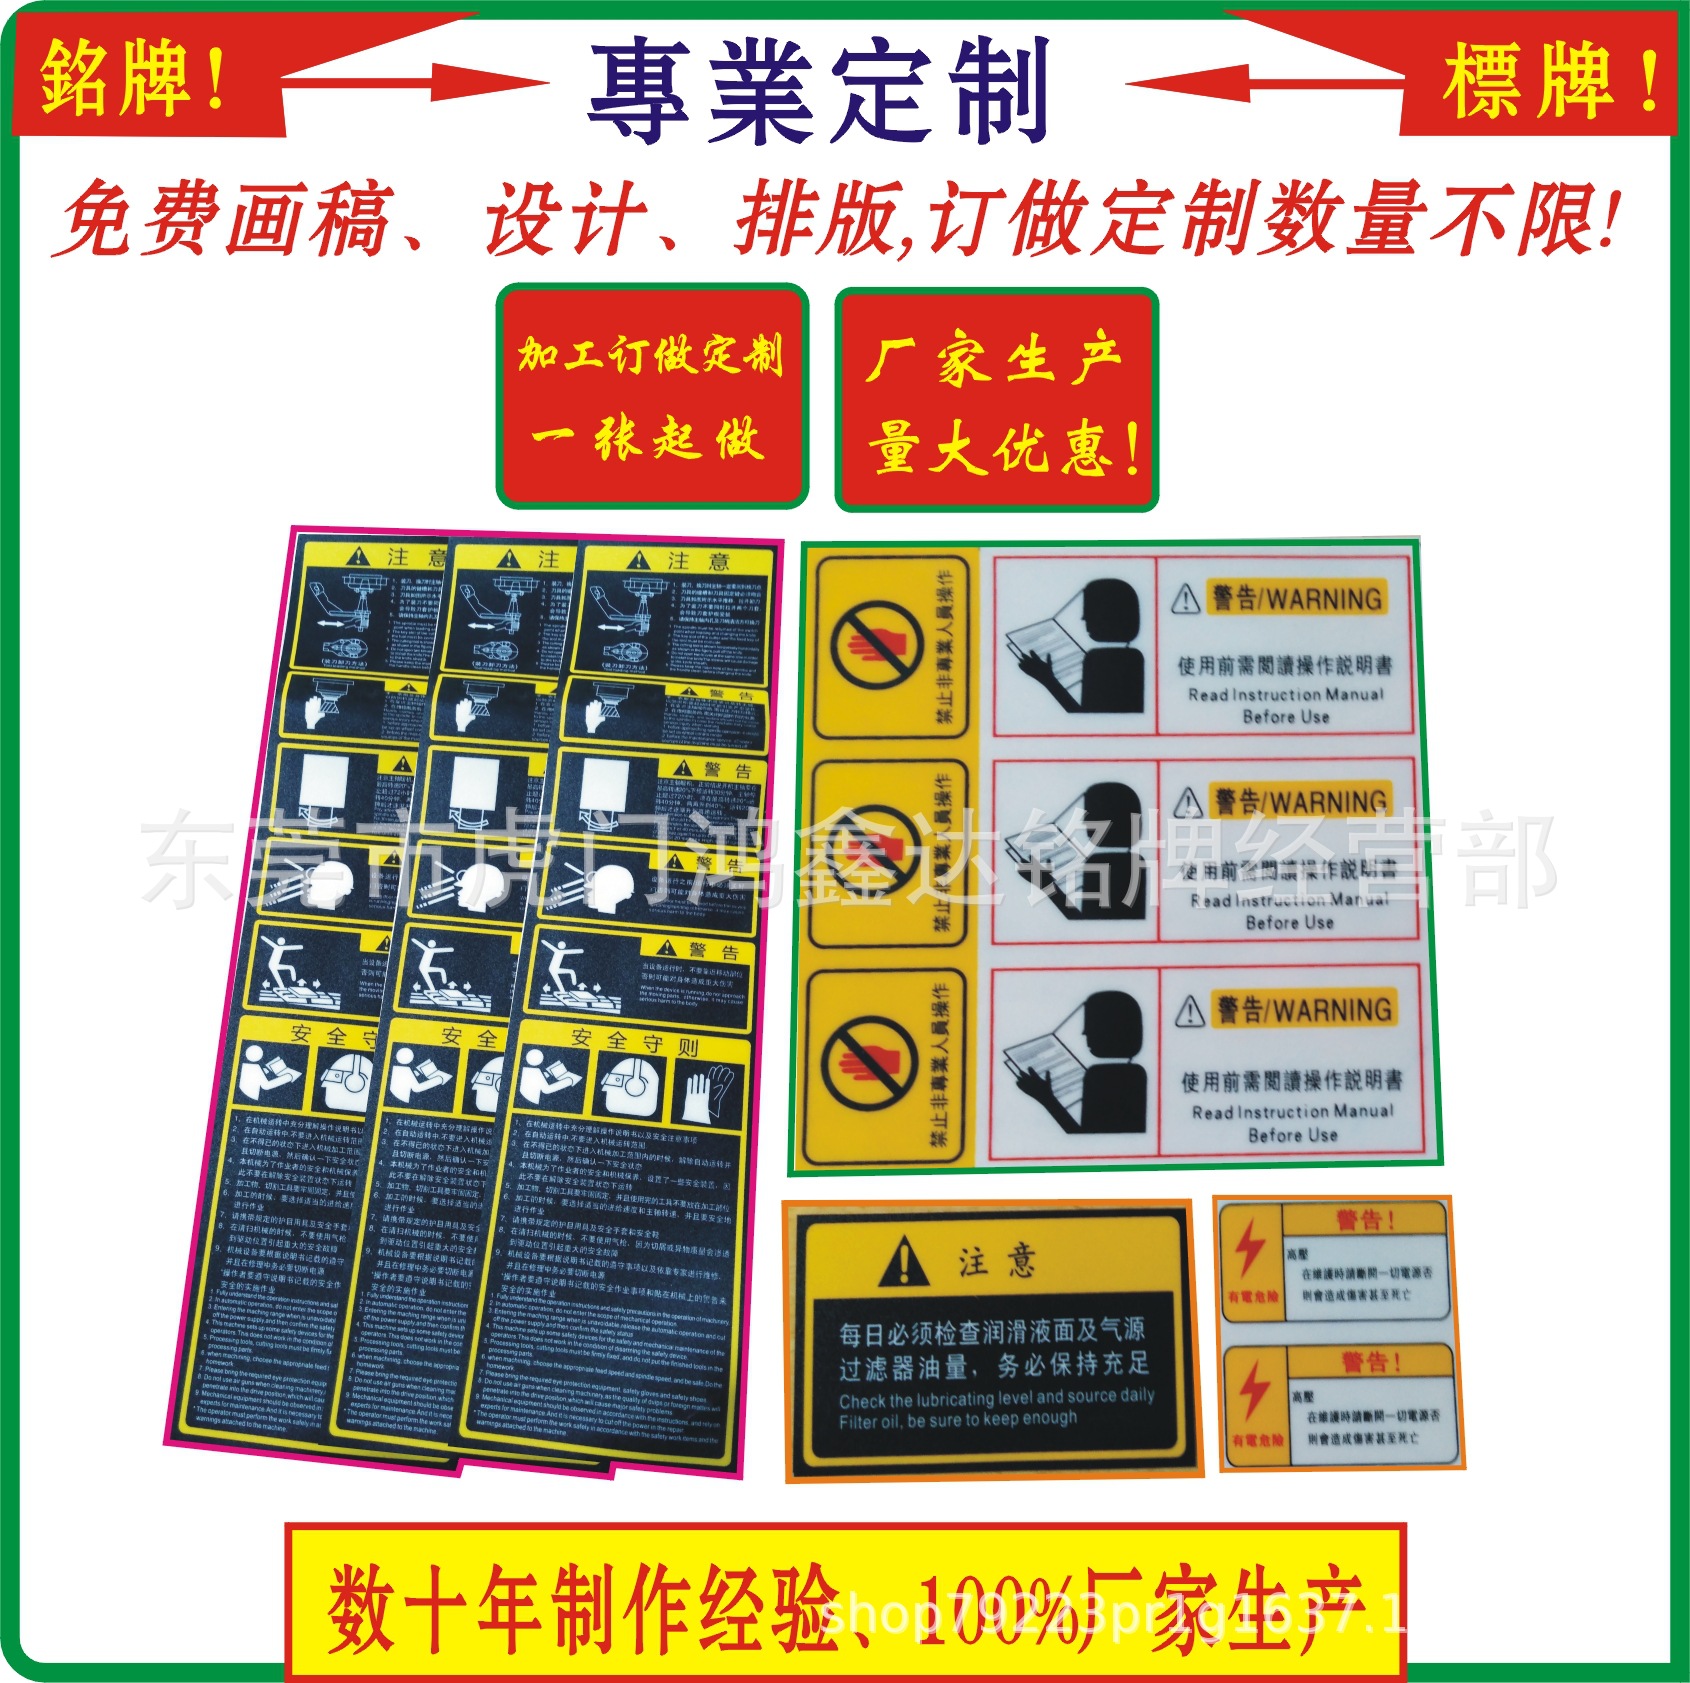 机床贴纸、pvc丝印标签、电器出厂标贴、设备出厂标贴，警示标签|ms